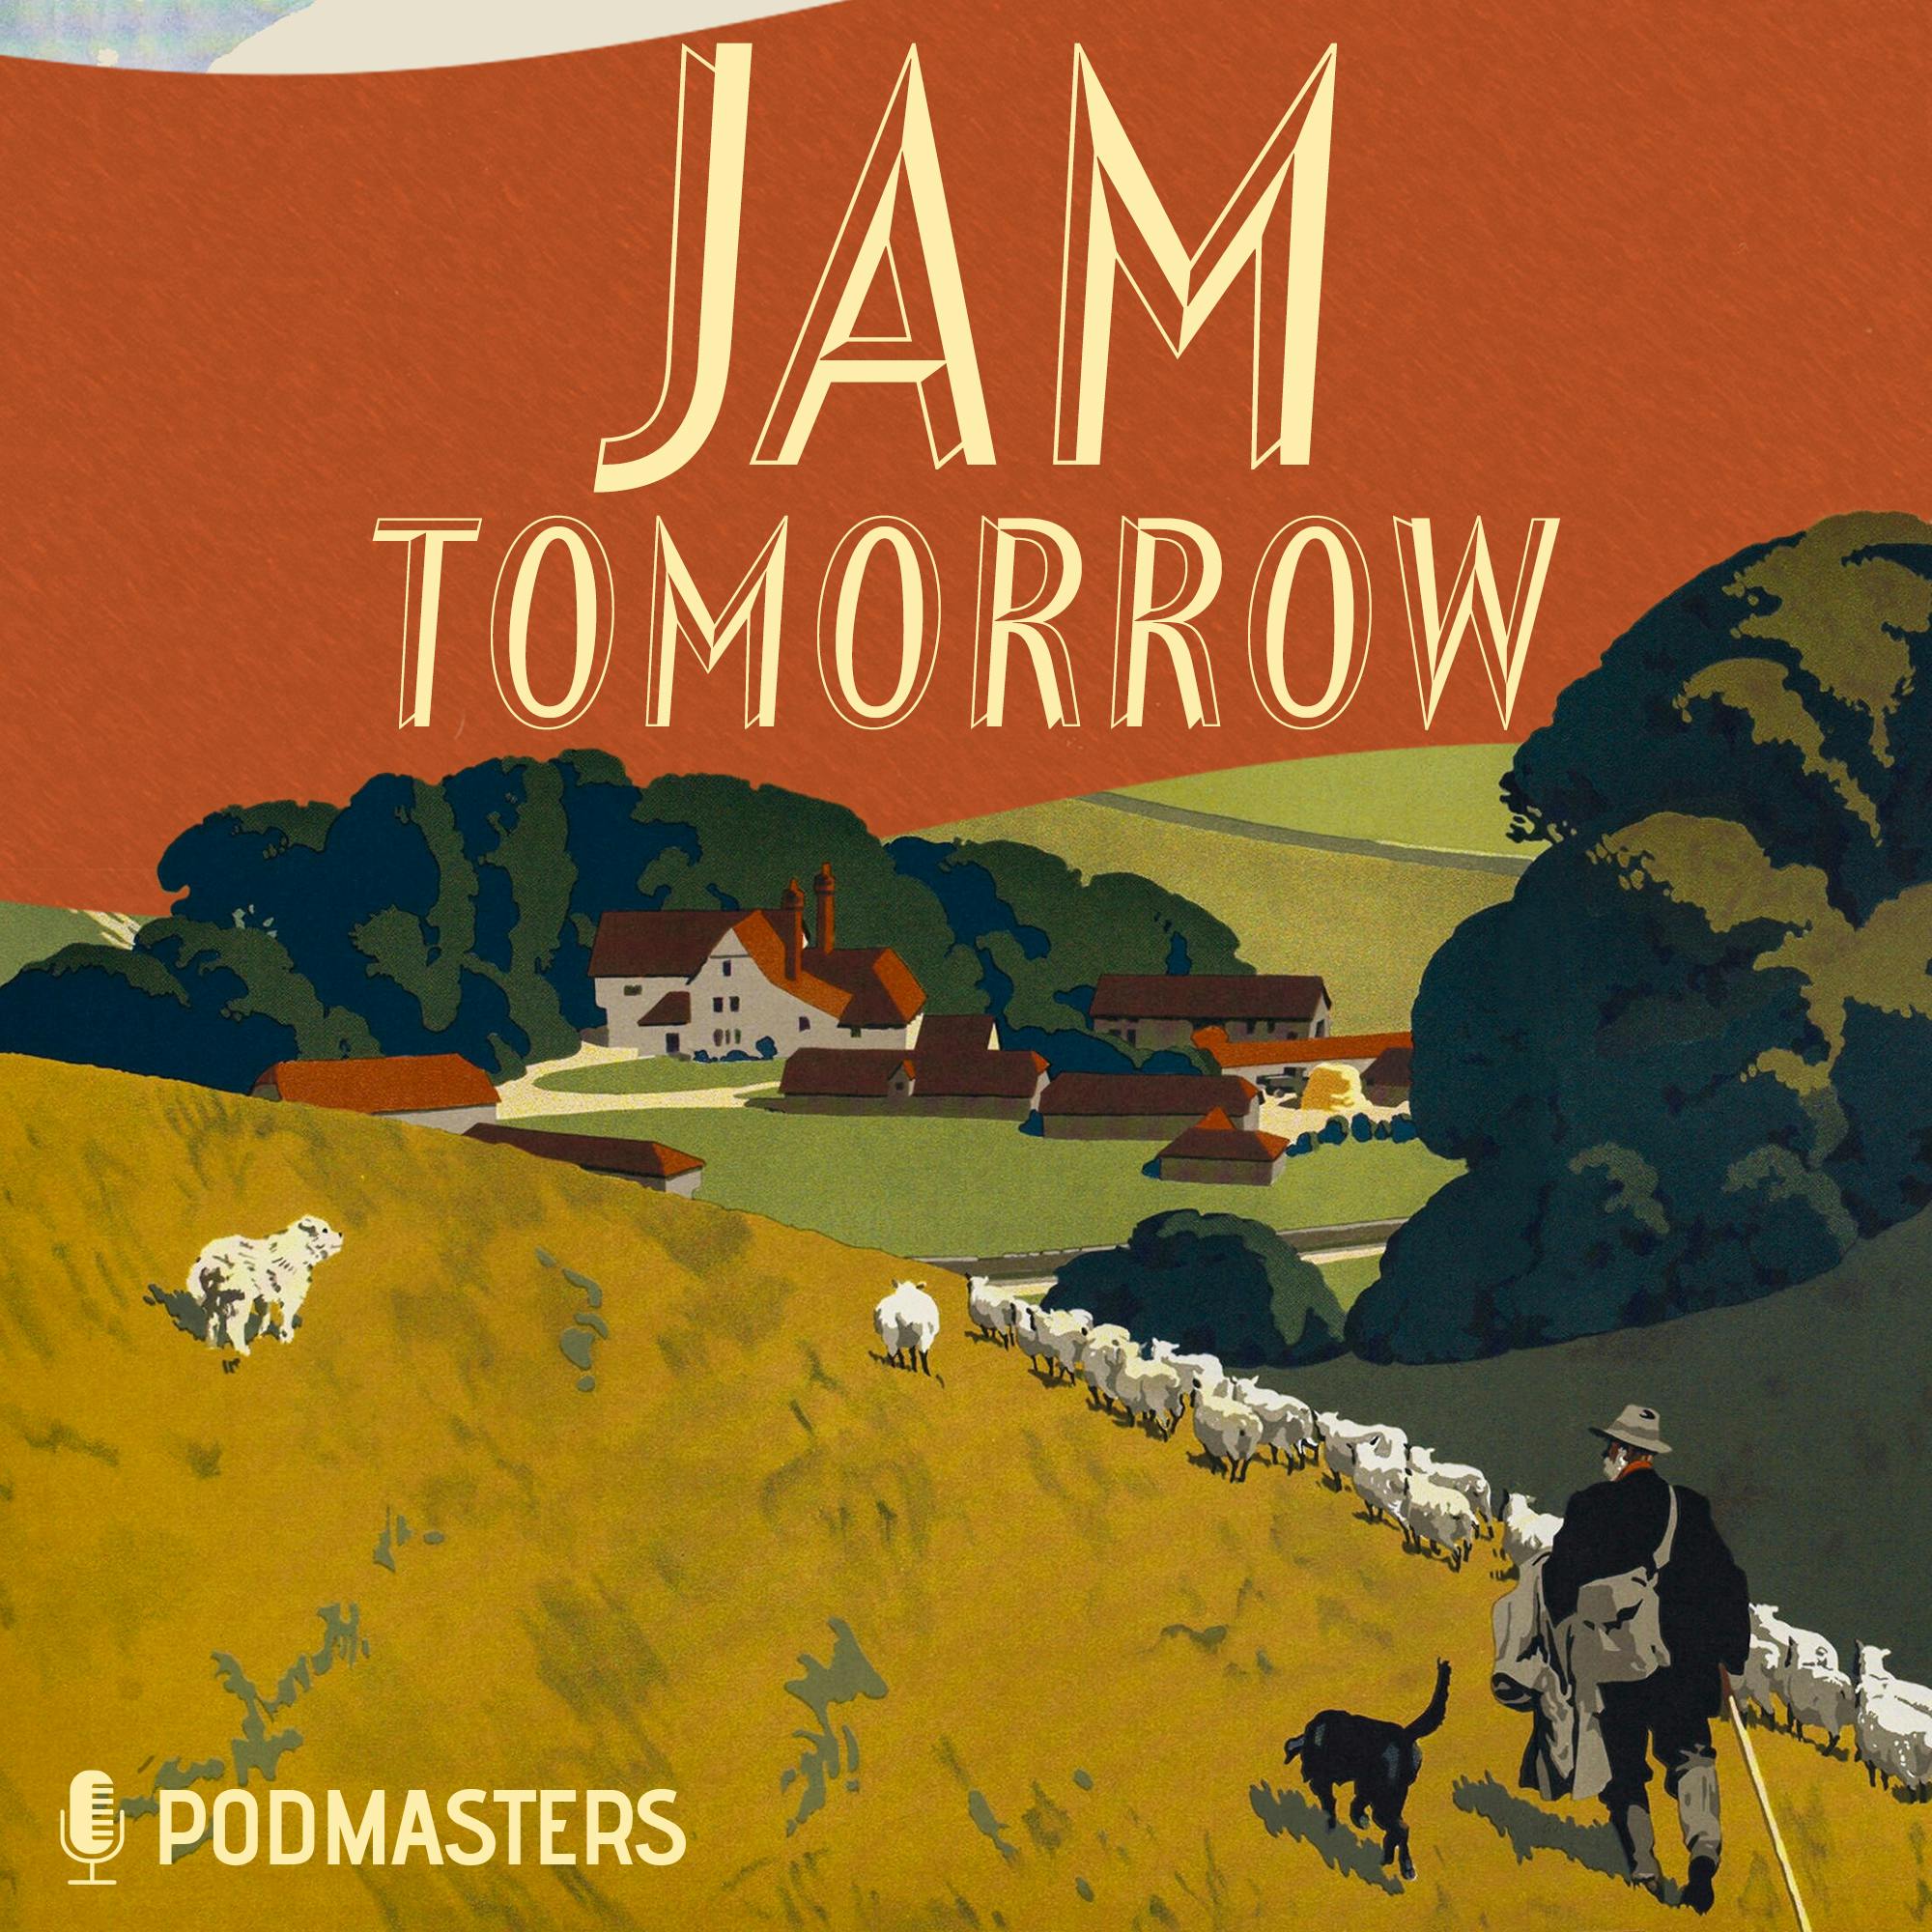 Jam Tomorrow podcast show image